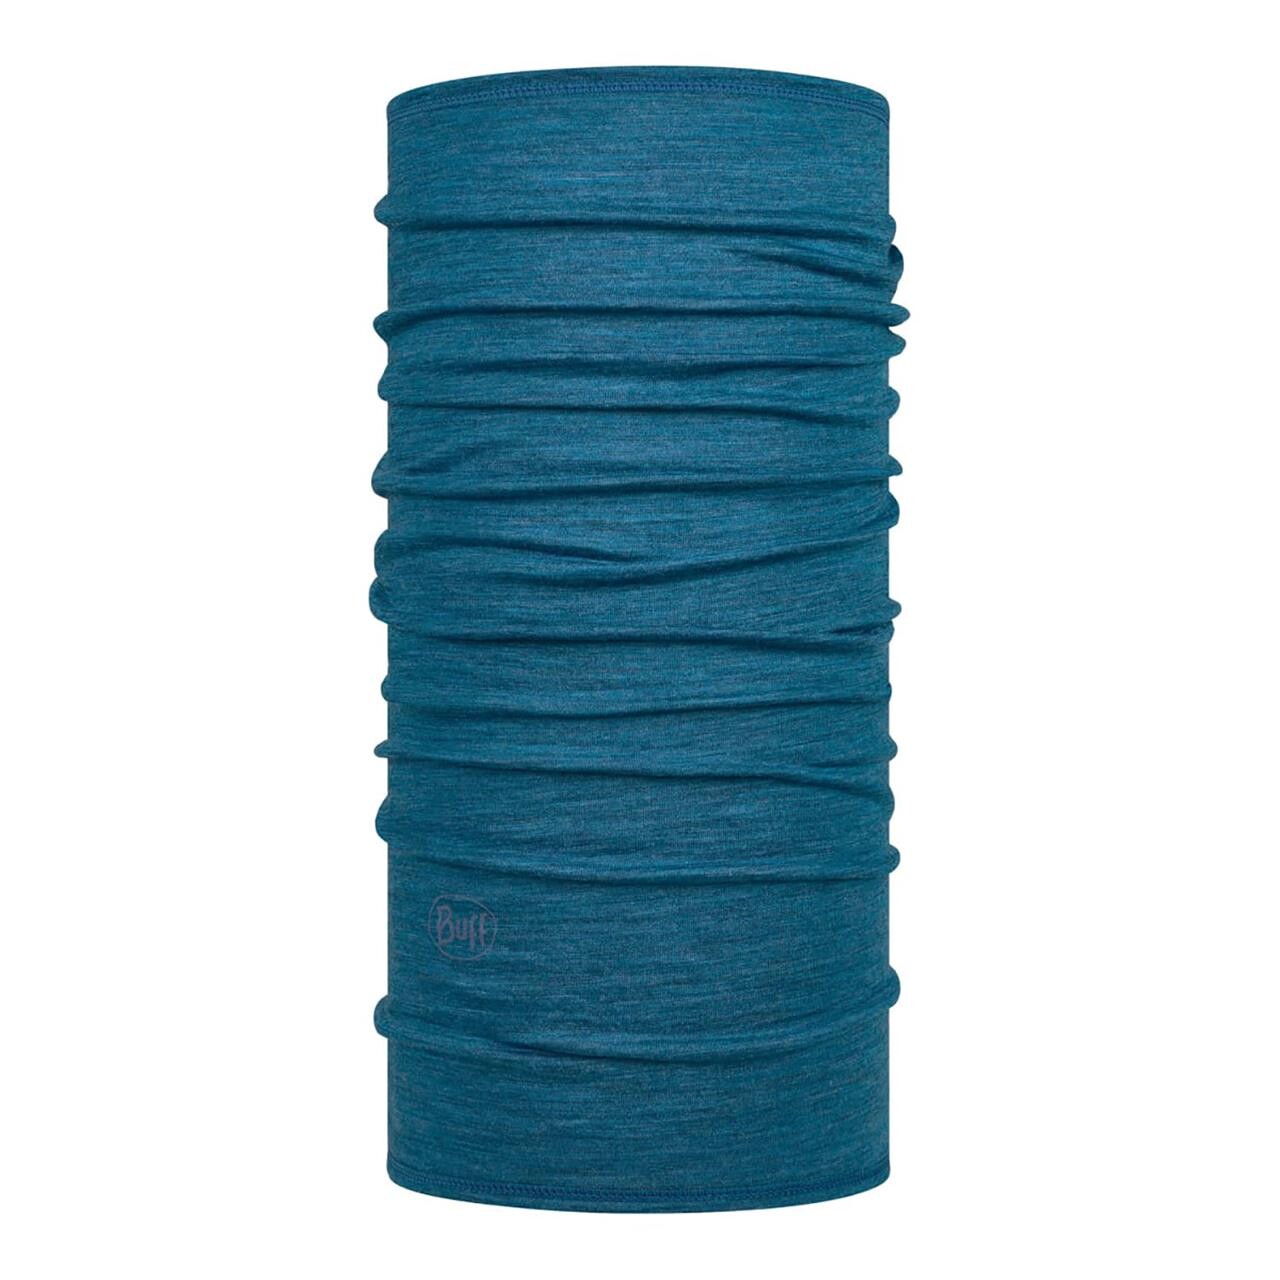 Se Buff Lightweight Merino Wool Buff (Blå (SOLID DUSTY BLUE) One size) hos Friluftsland.dk